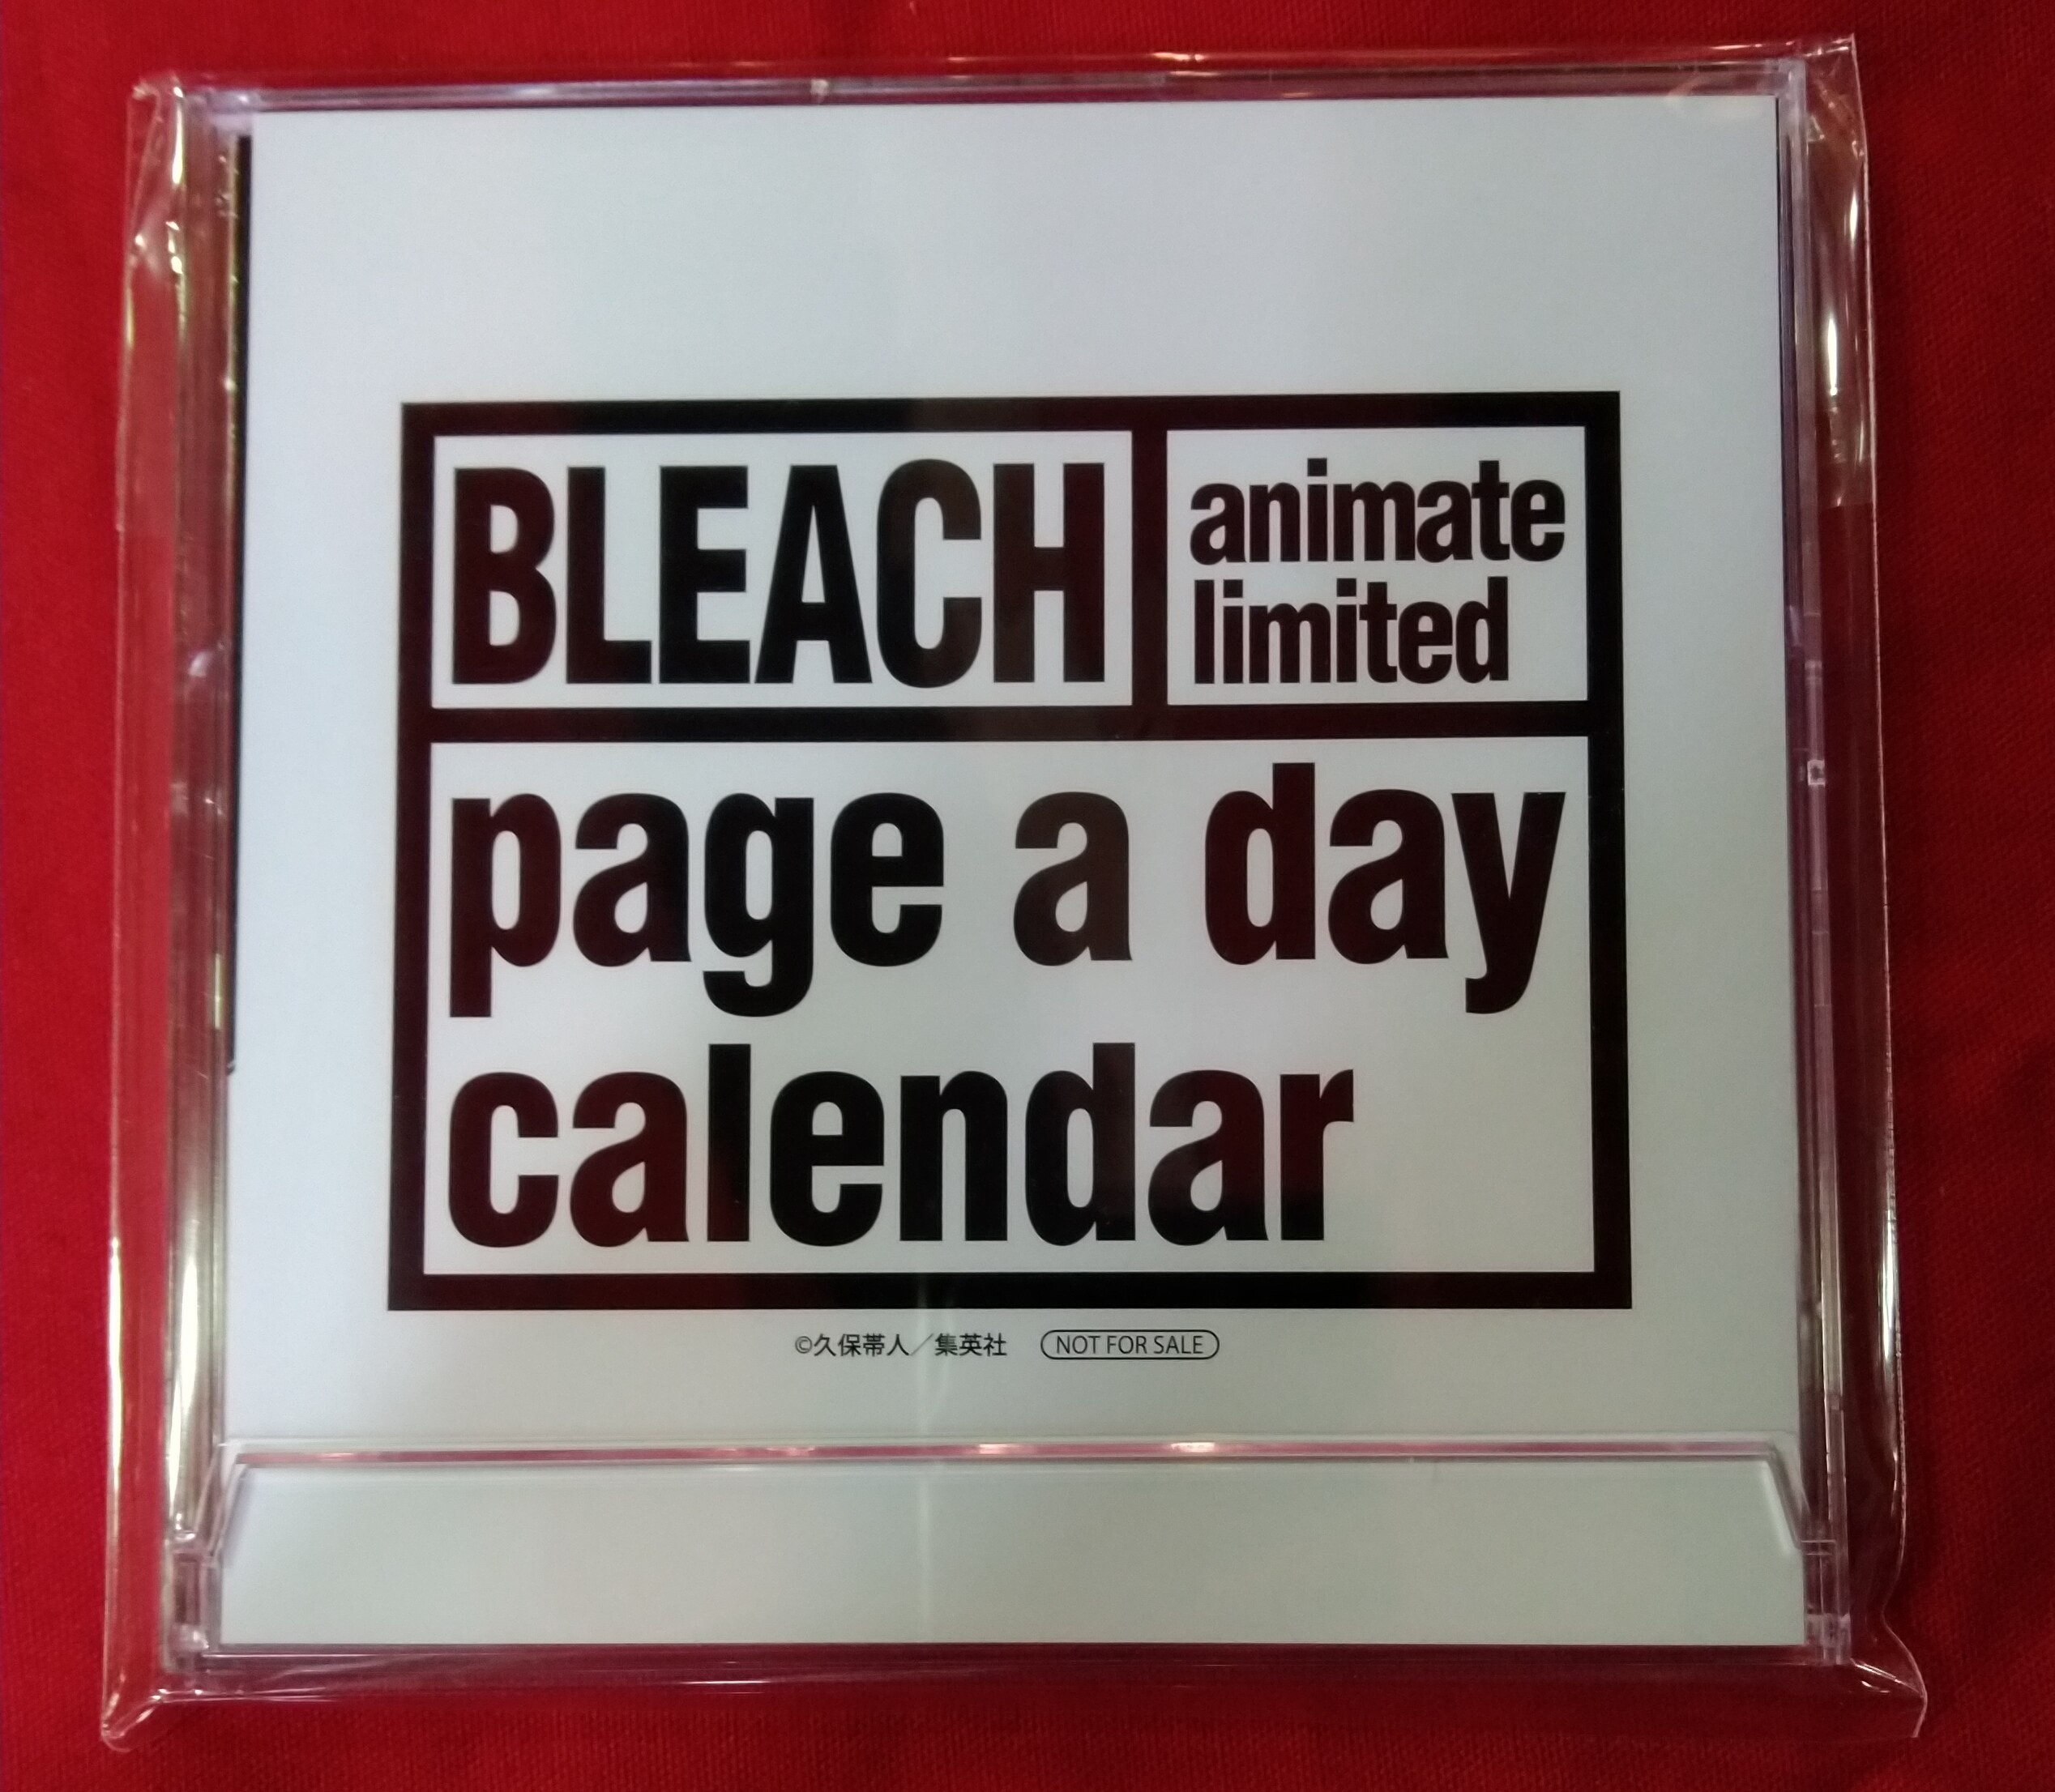 Bleachイラスト集 Jet 久保帯人 アニメイト購入特典日めくりbleach 日めくり名言カレンダー まんだらけ Mandarake